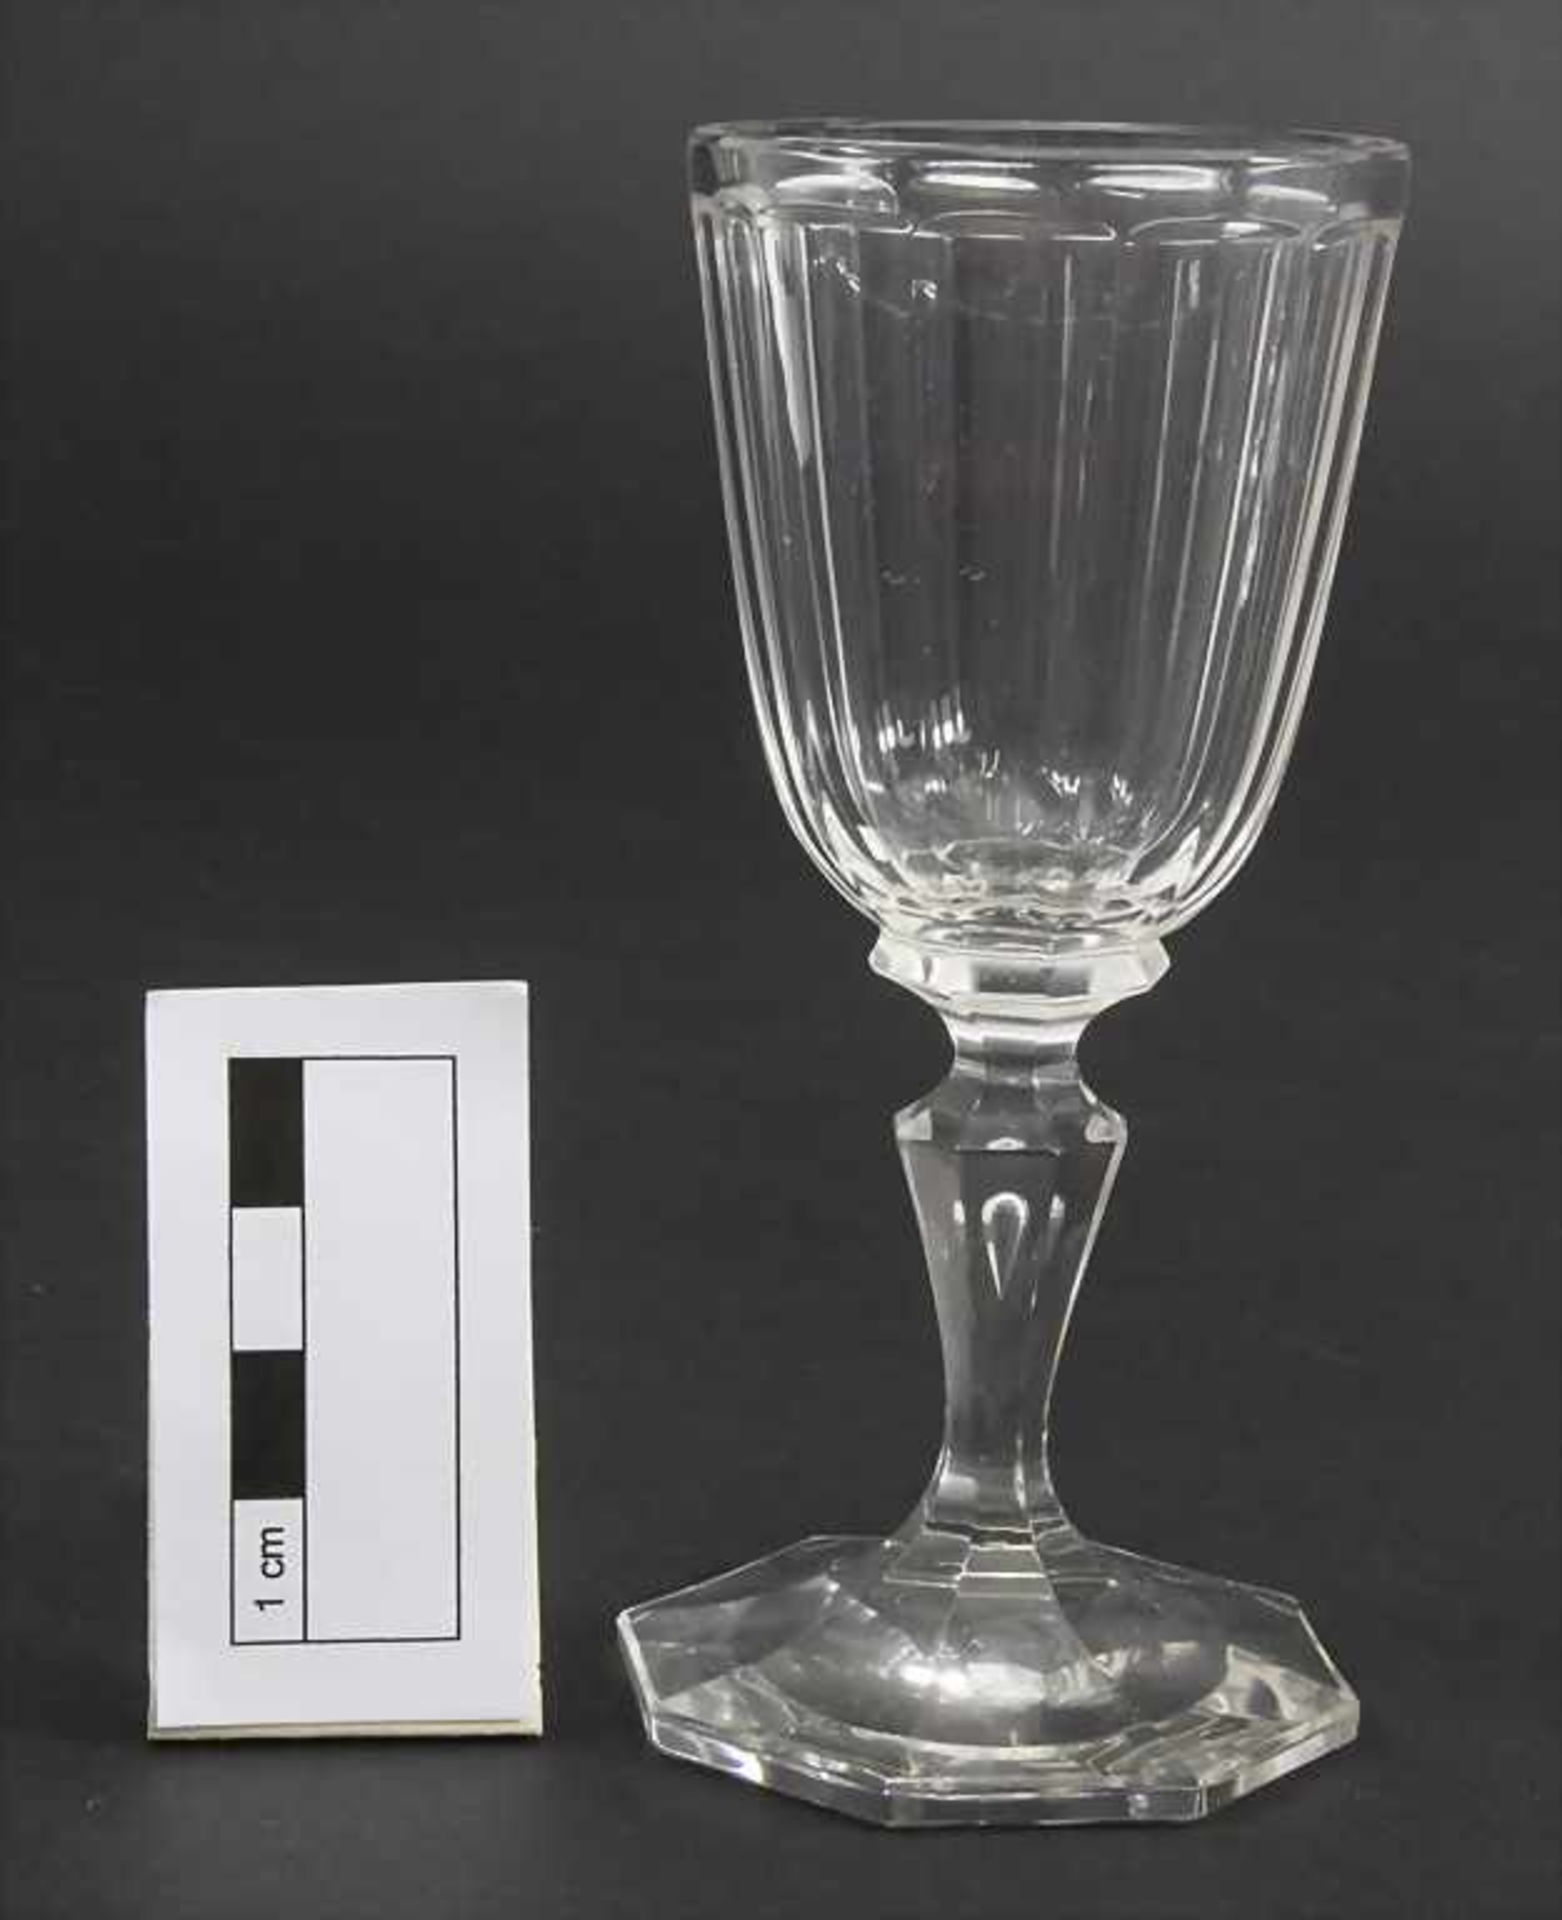 6 Likörgläser / 6 liqueur glasses, J. & L. Lobmeyr, Wien, um 1900 - Image 2 of 2